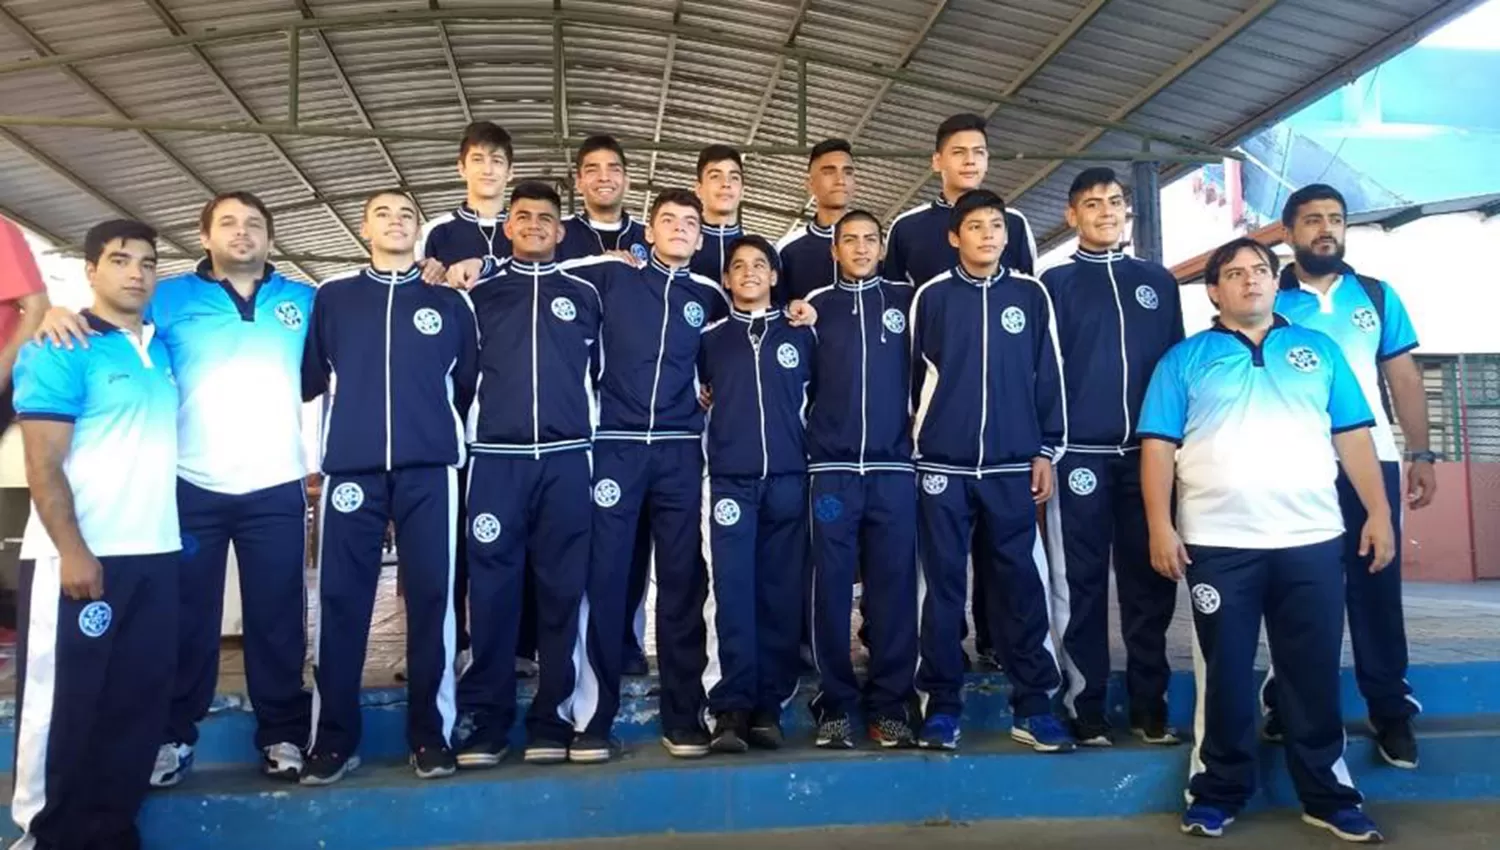 Los chicos tucumanos del U15 estarán presentes en el torneo que contará con 22 equipos.
FOTO TOMADA DE PRENSA FBPT